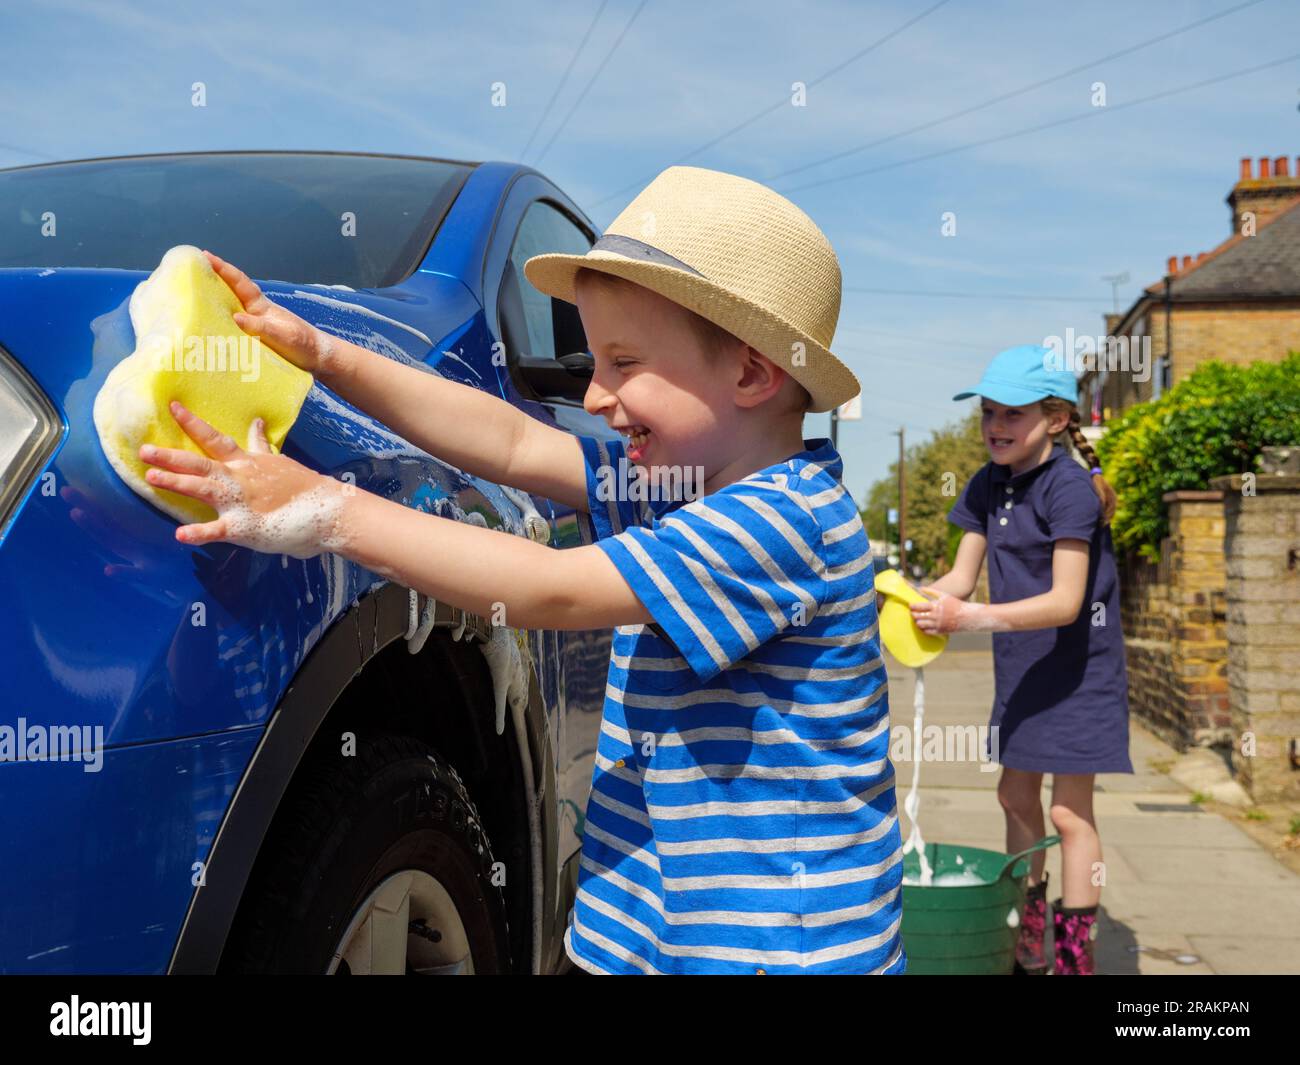 Two children having fun washing a car Stock Photo